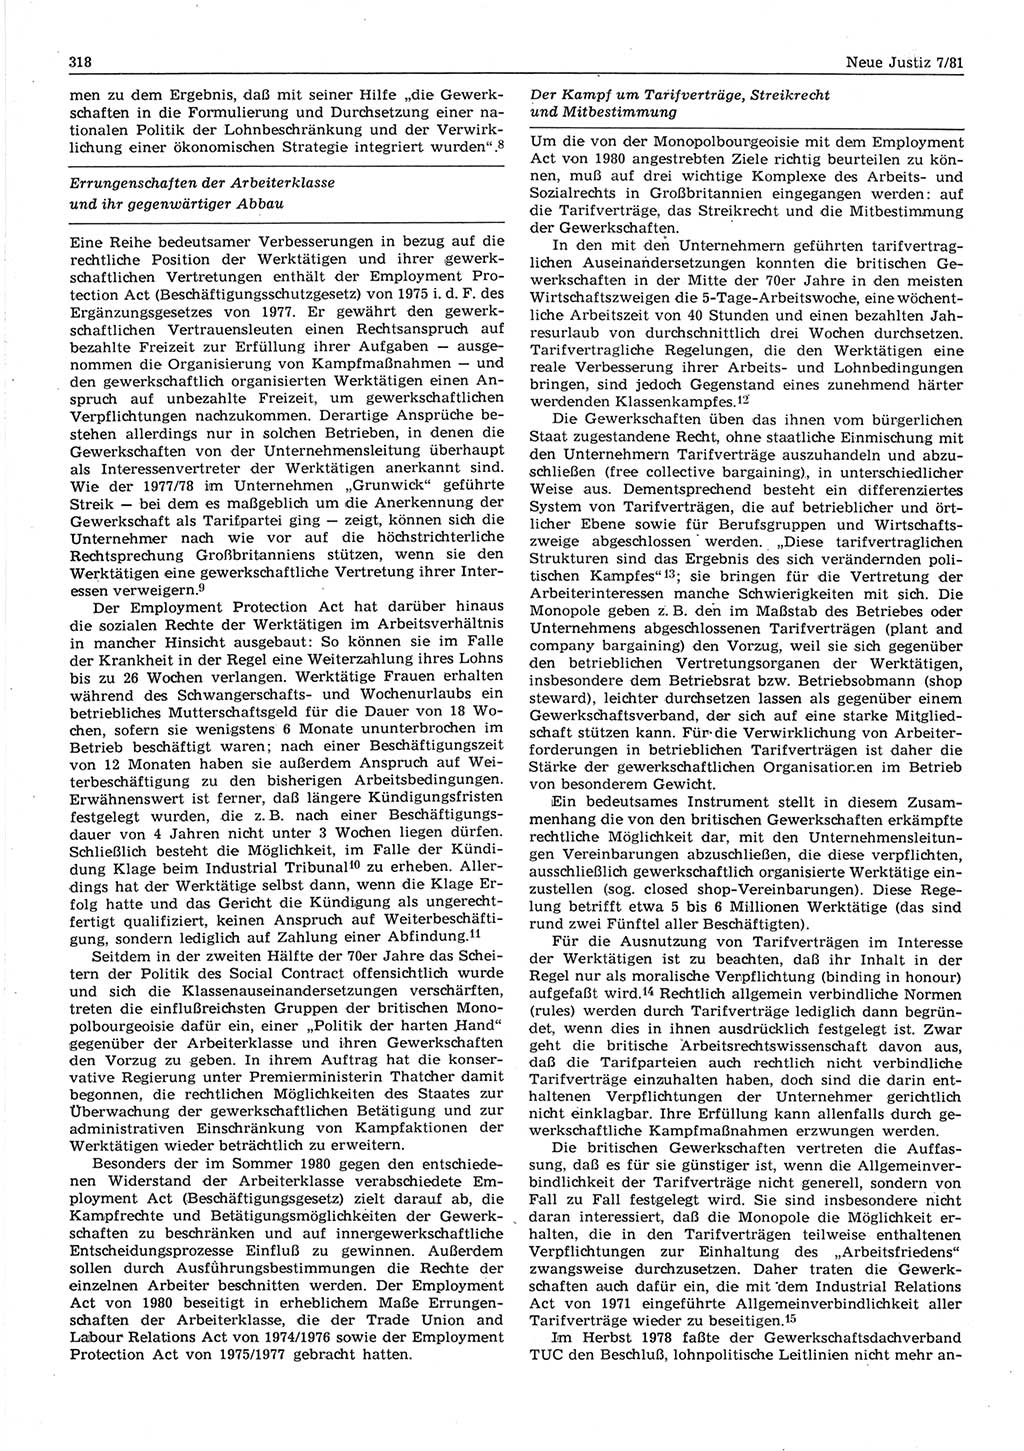 Neue Justiz (NJ), Zeitschrift für sozialistisches Recht und Gesetzlichkeit [Deutsche Demokratische Republik (DDR)], 35. Jahrgang 1981, Seite 318 (NJ DDR 1981, S. 318)